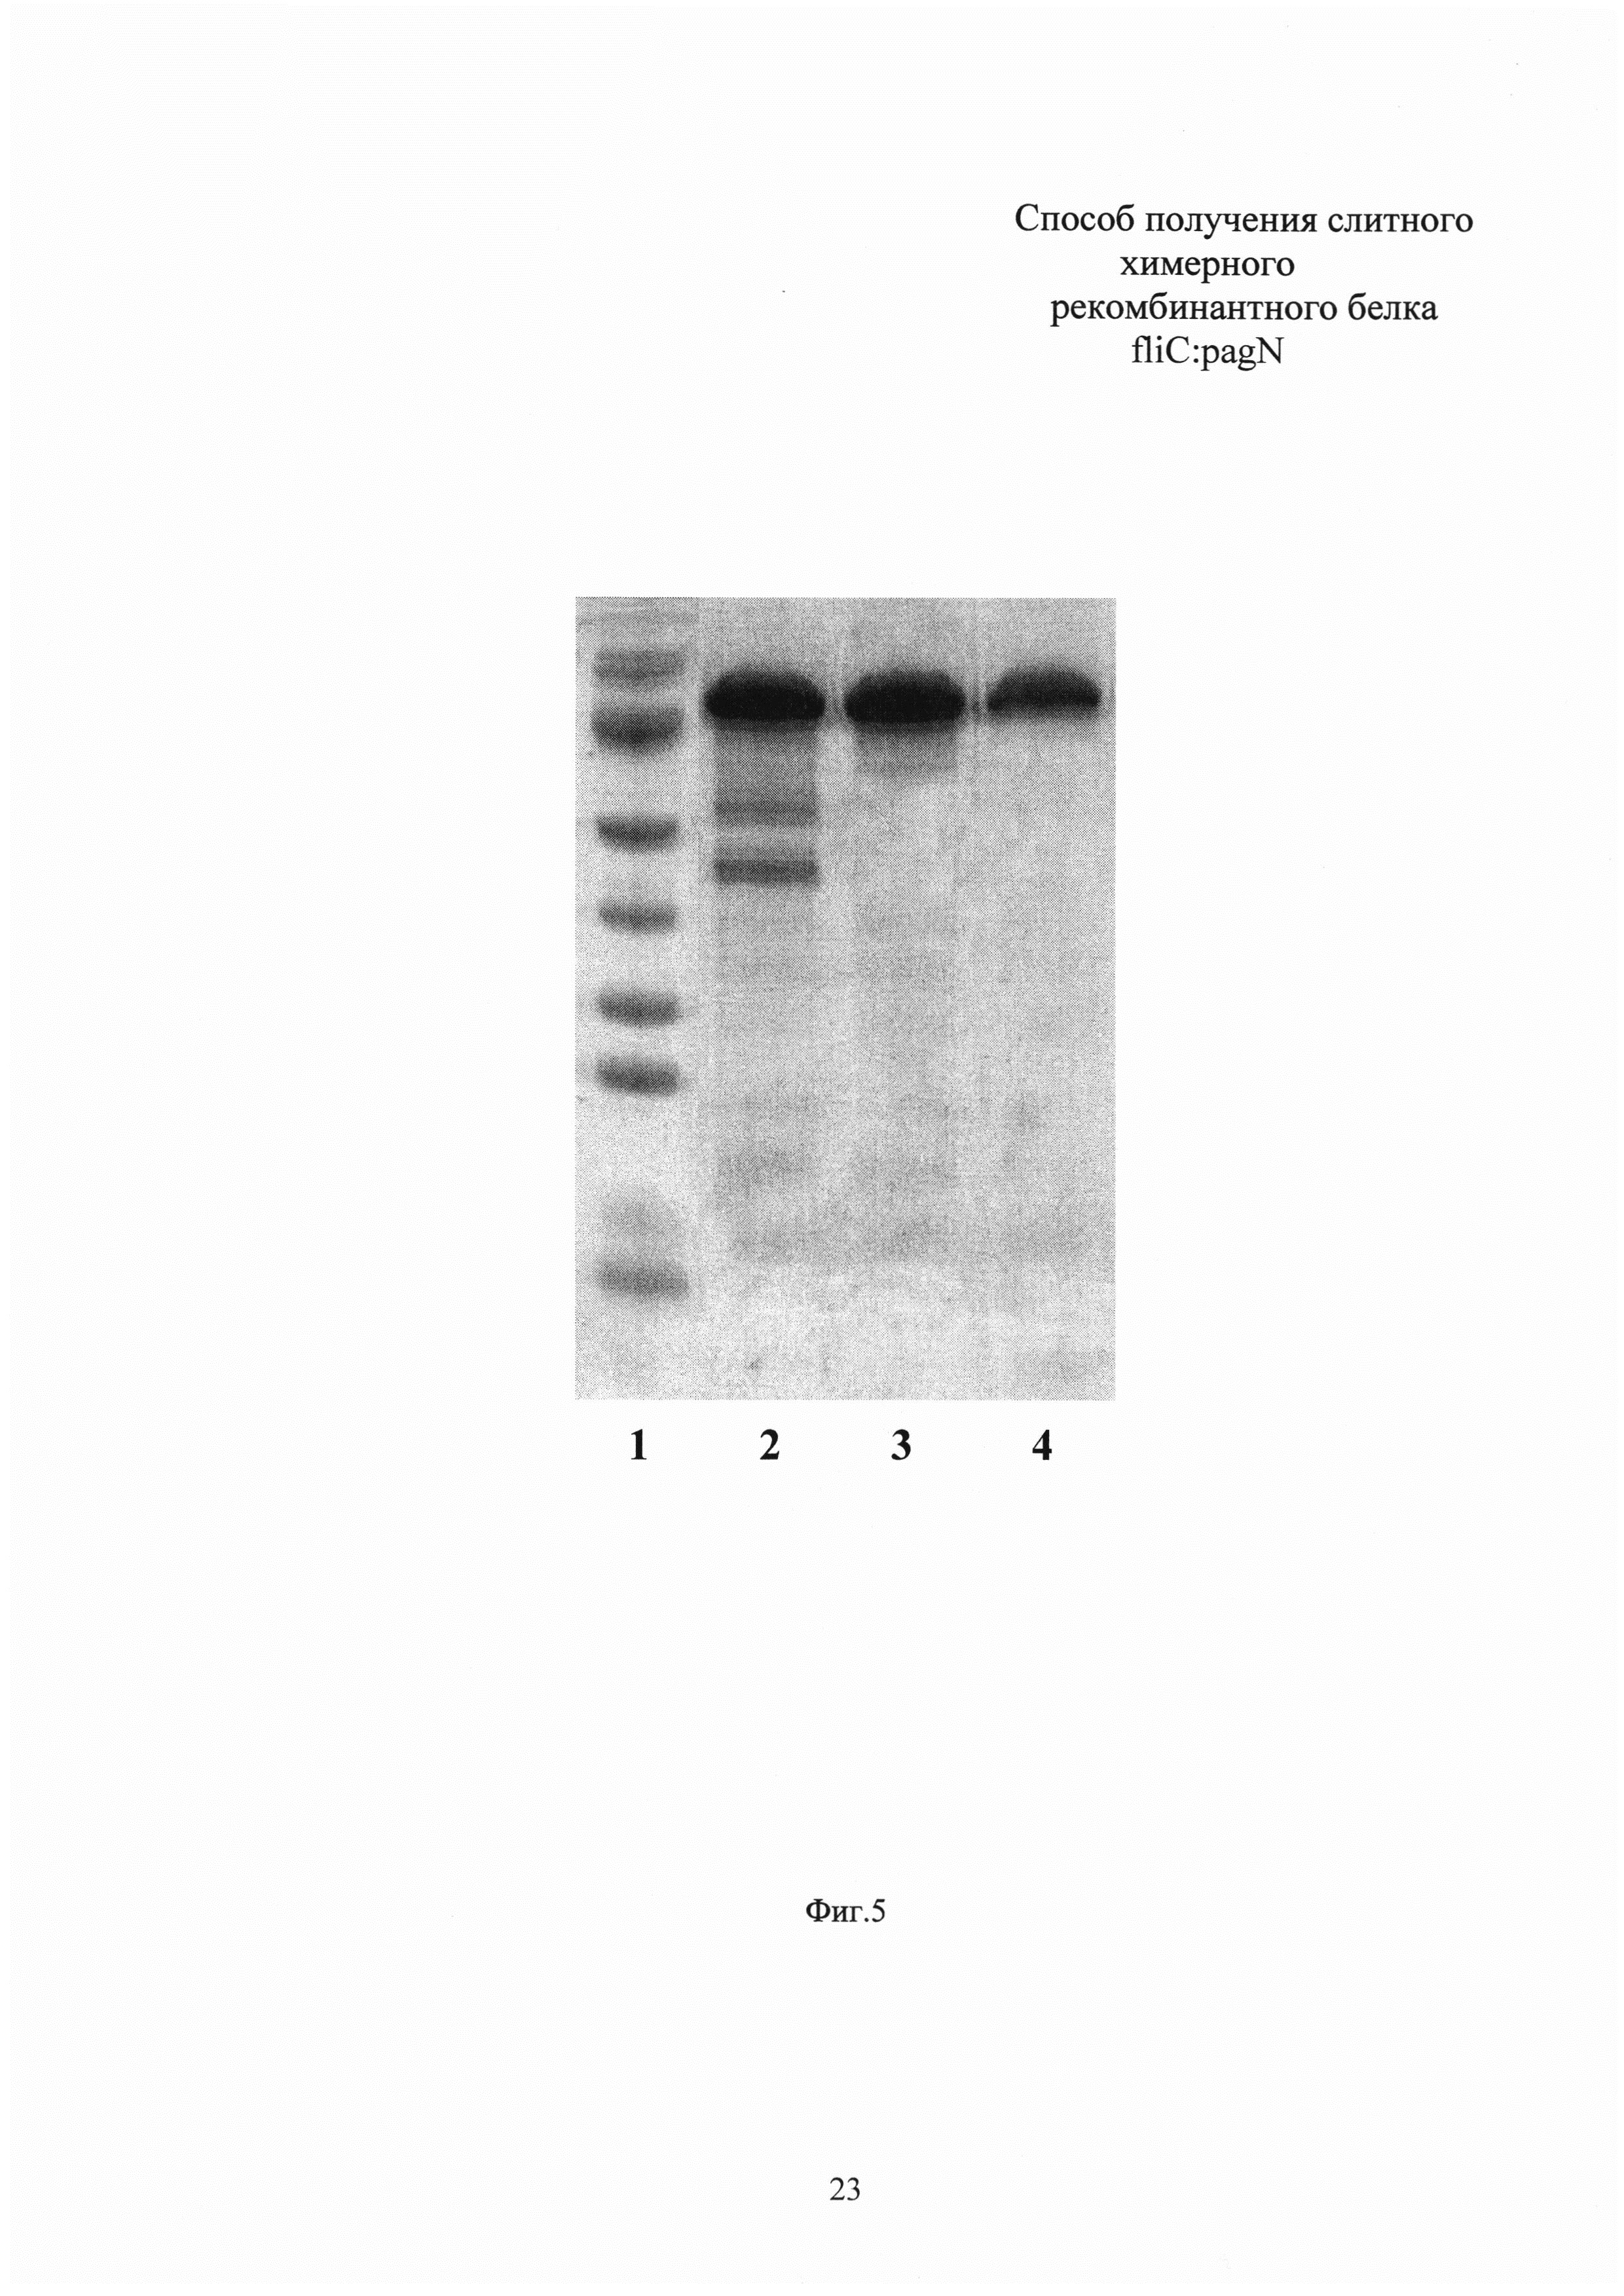 Способ получения химерного рекомбинантного белка fliC:pagN